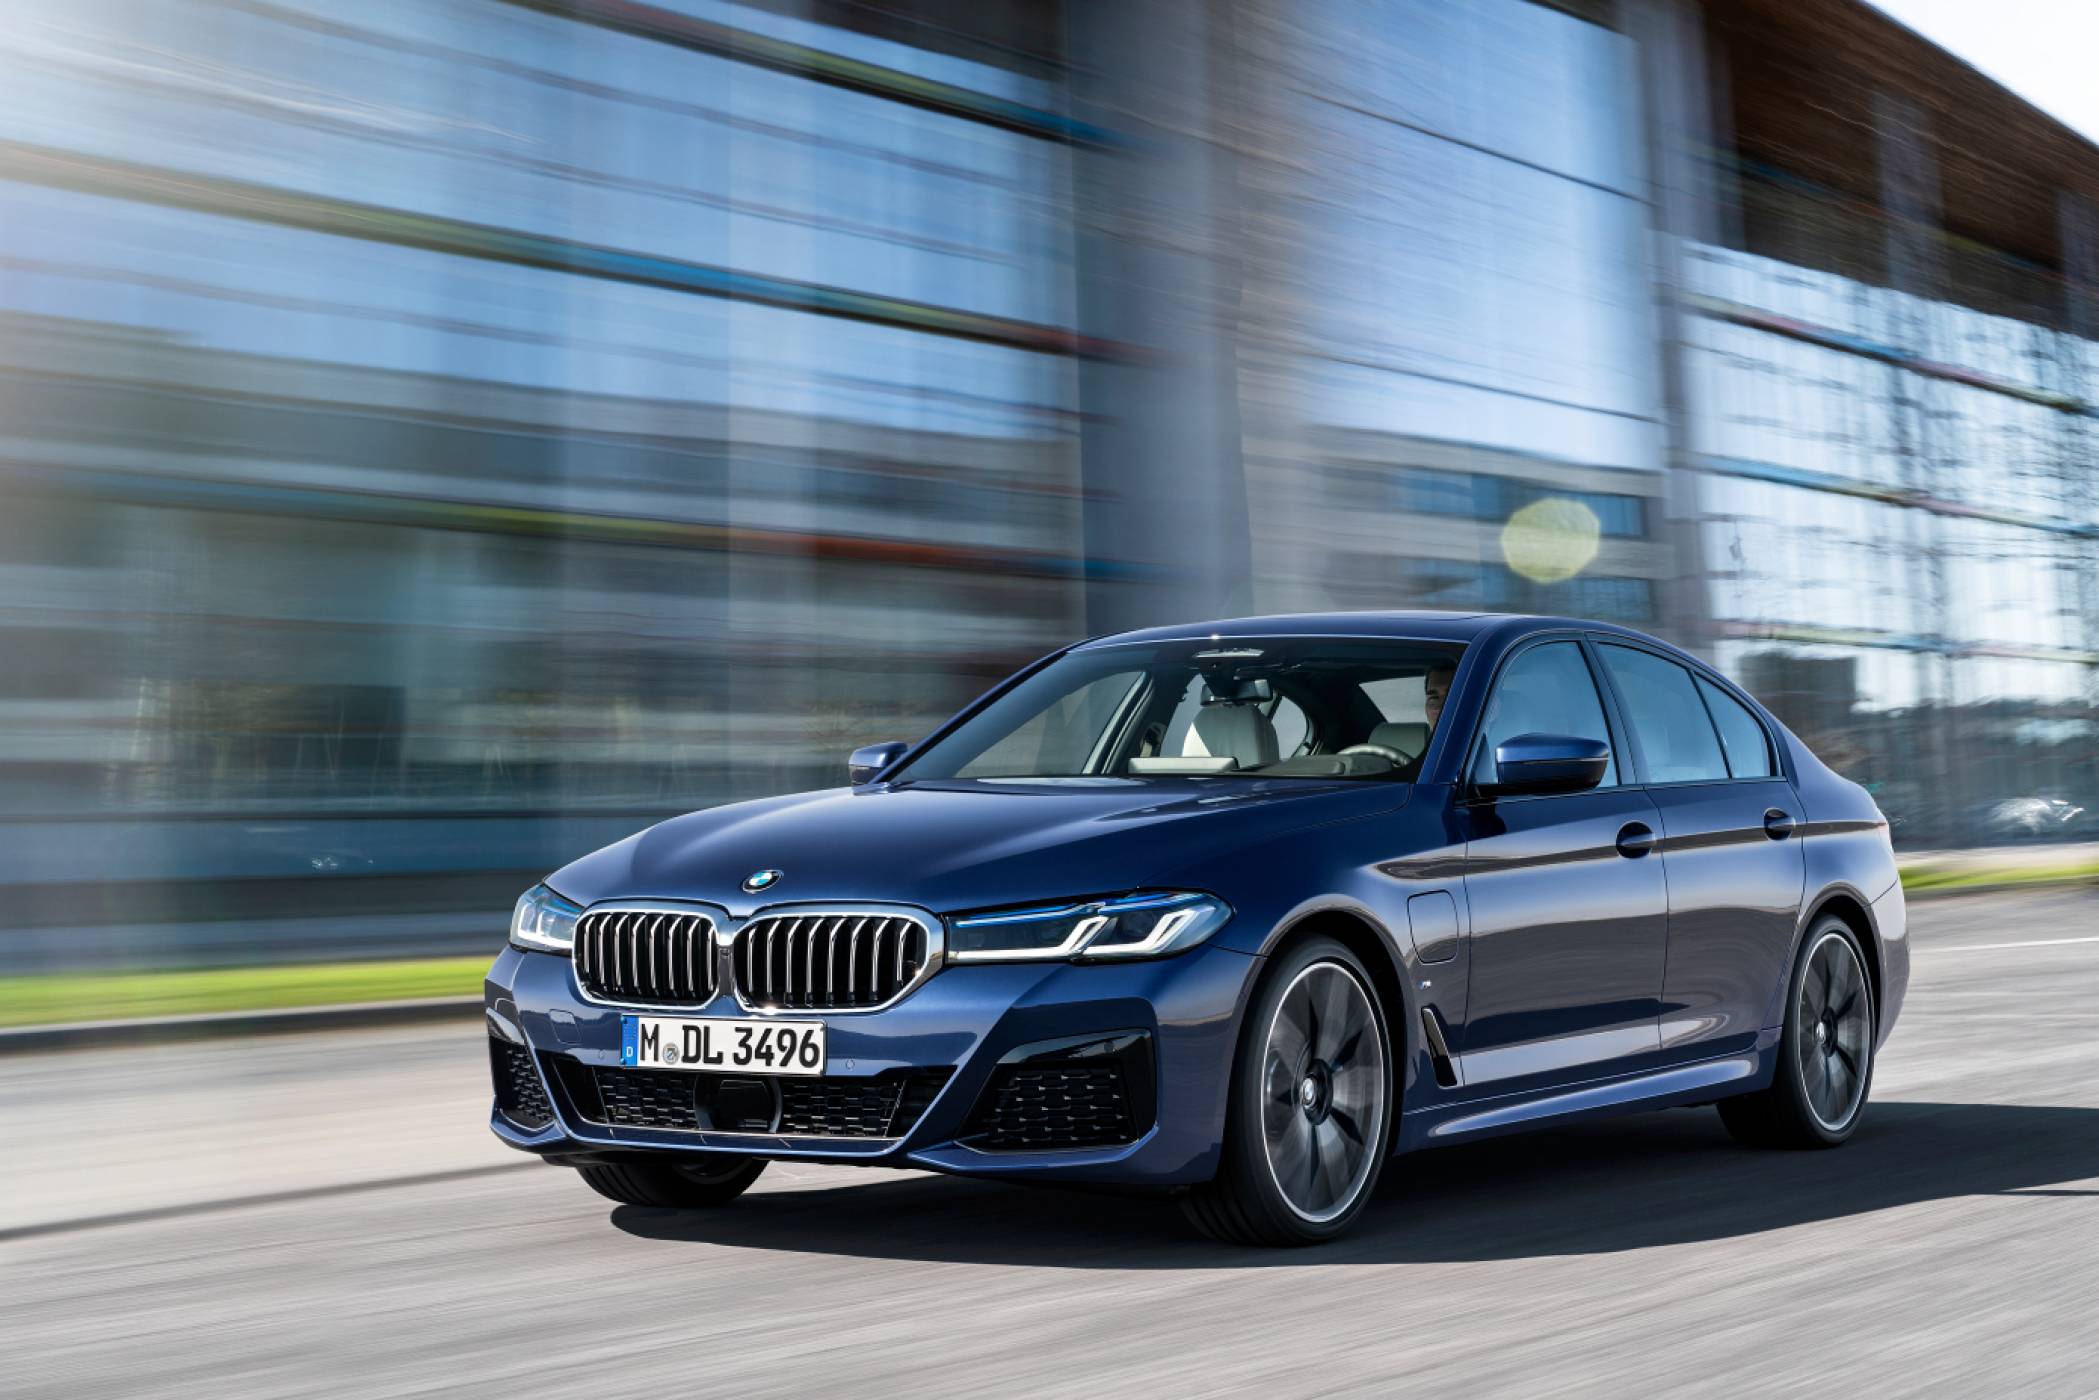 BMW ще предлага допълнителни екстри за автомобилите си чрез абонаменти